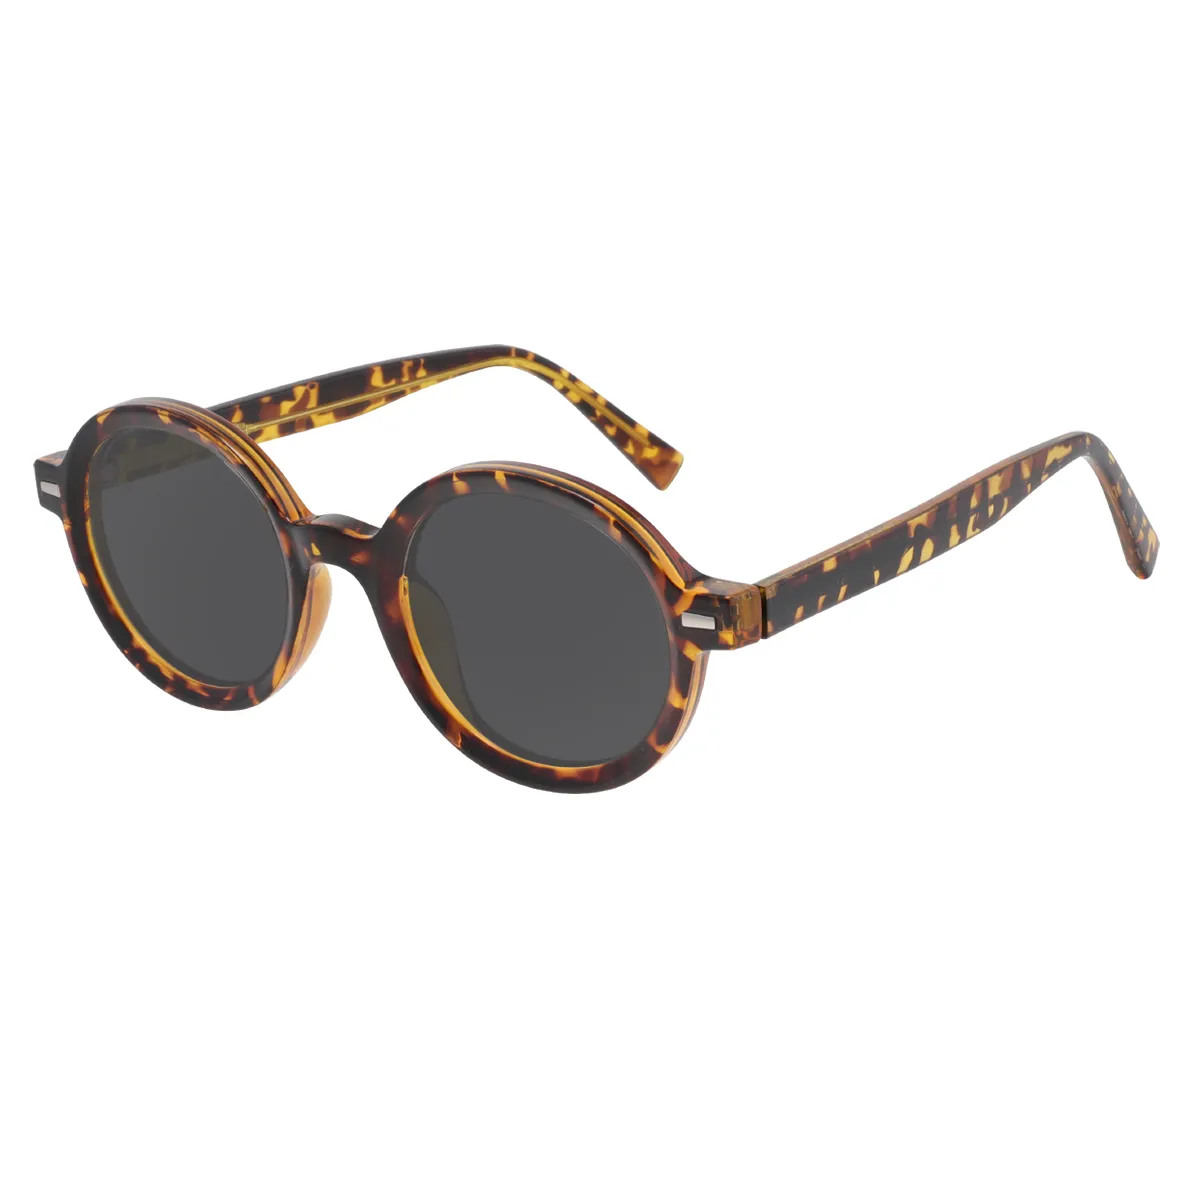 Elsy - Round Tortoiseshell Sunglasses for Men & Women